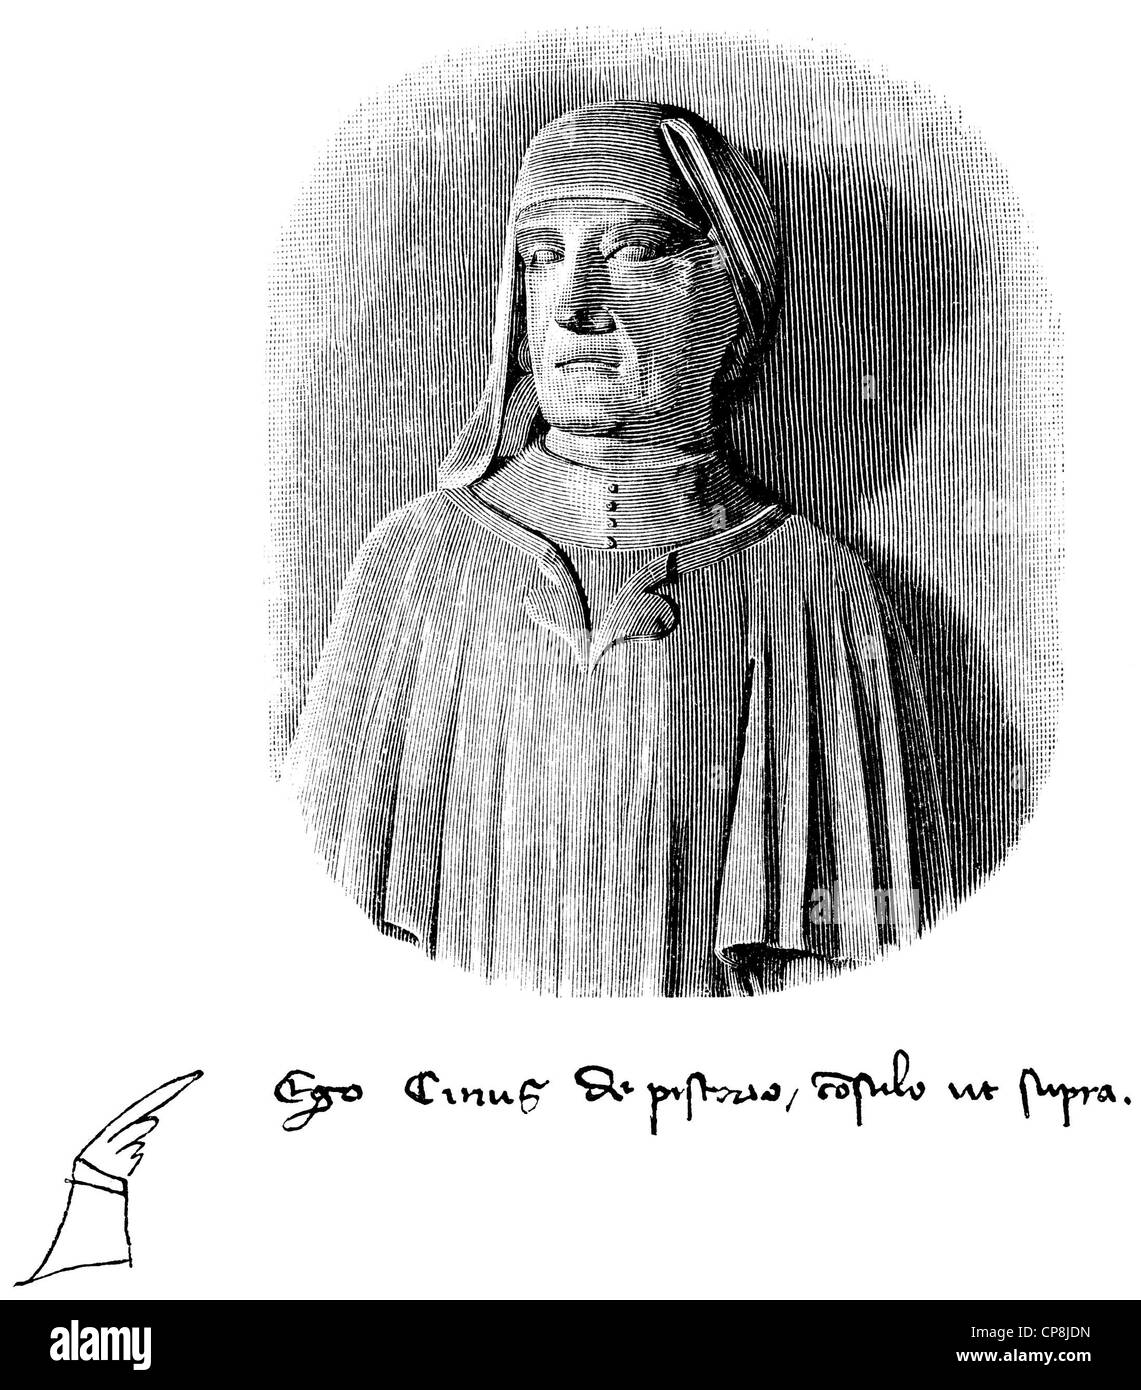 Cino da Pistoia ou Guittoncino di ser Francesco dei Sigisbuldi, 1270 - 1336, un poète et juriste, illustration historique Banque D'Images